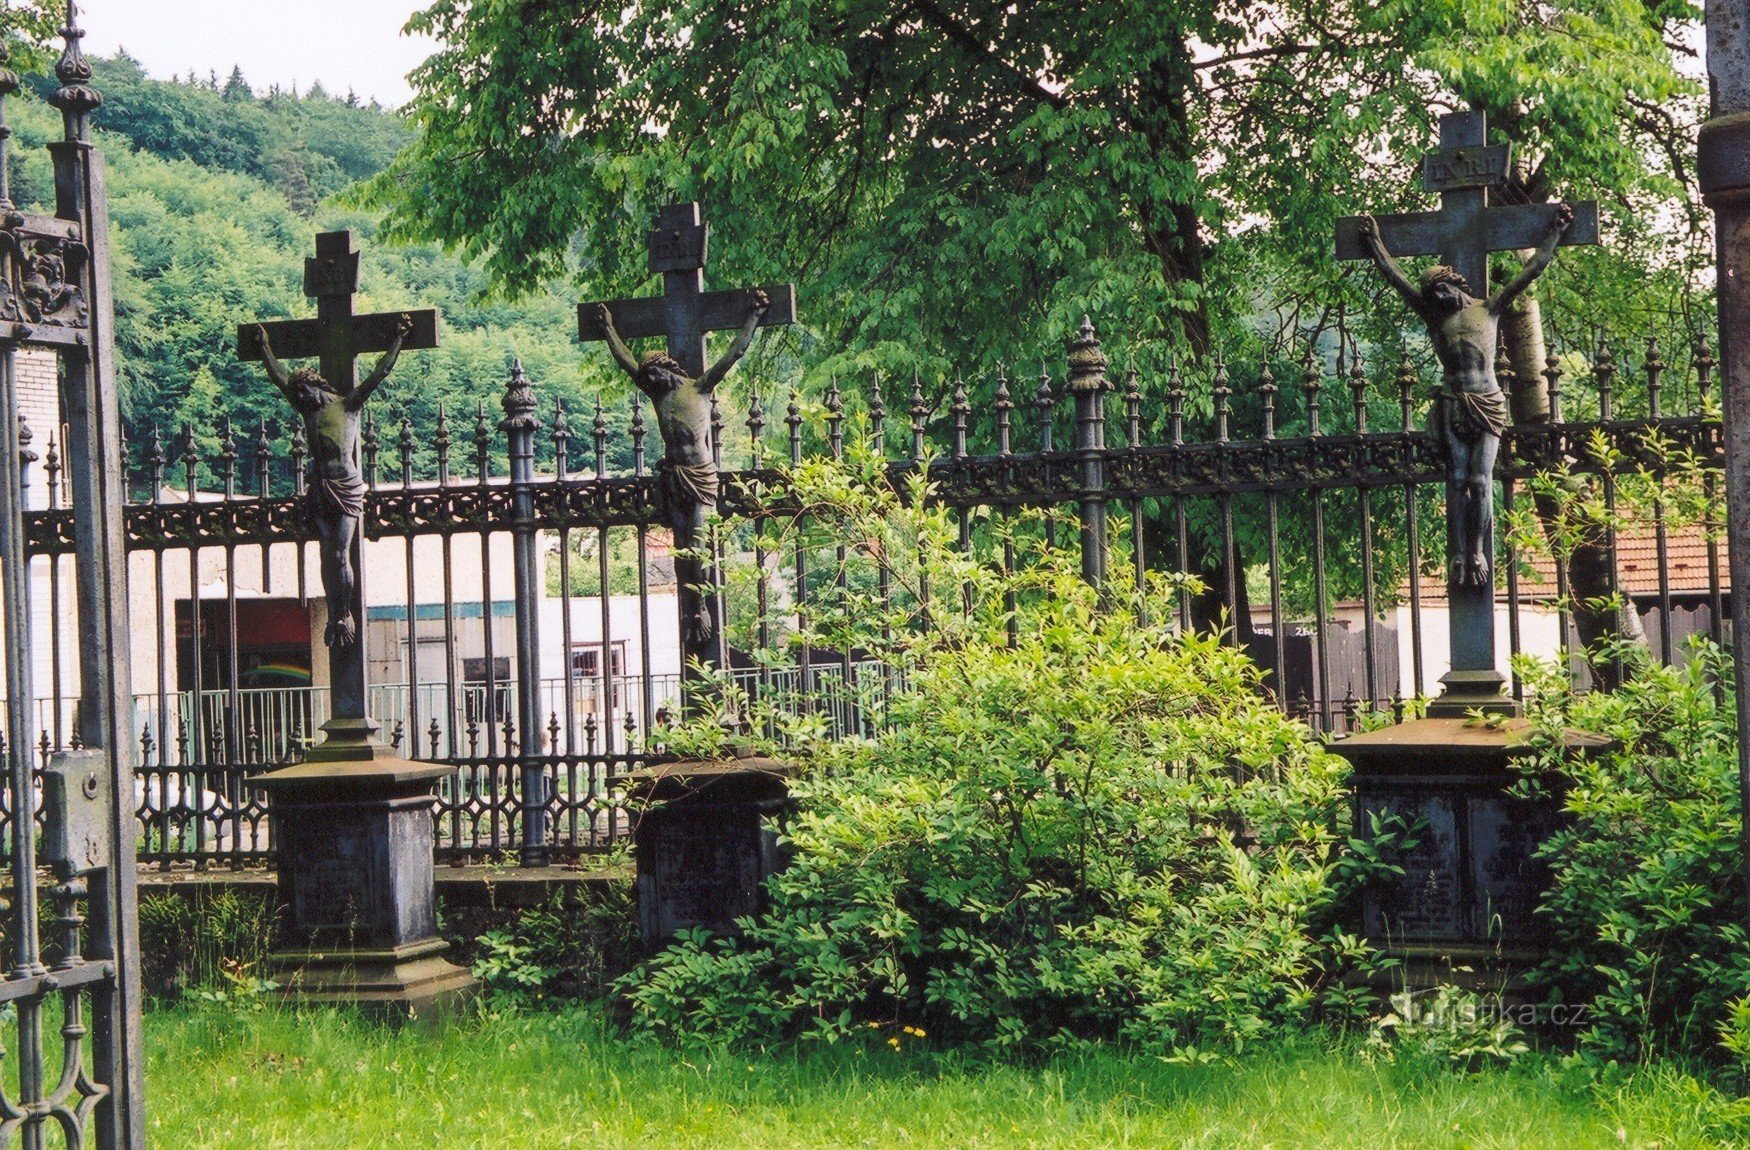 モラヴィア カルストの柱 - サルム家の墓地